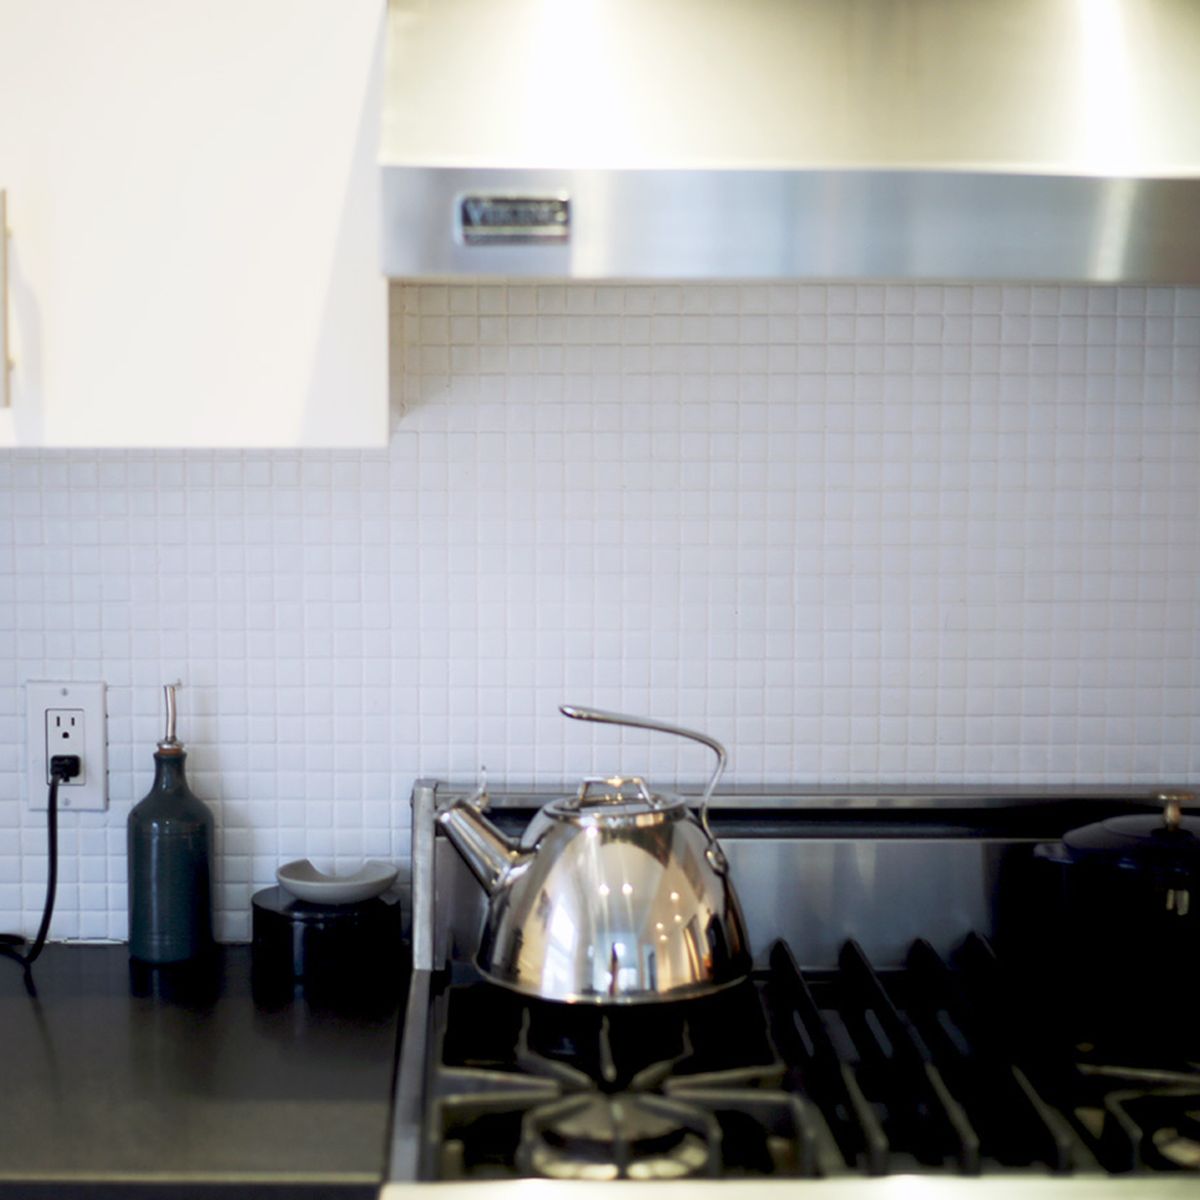 How To Paint A Kitchen Tile Backsplash Kitchen Tiles Backsplash